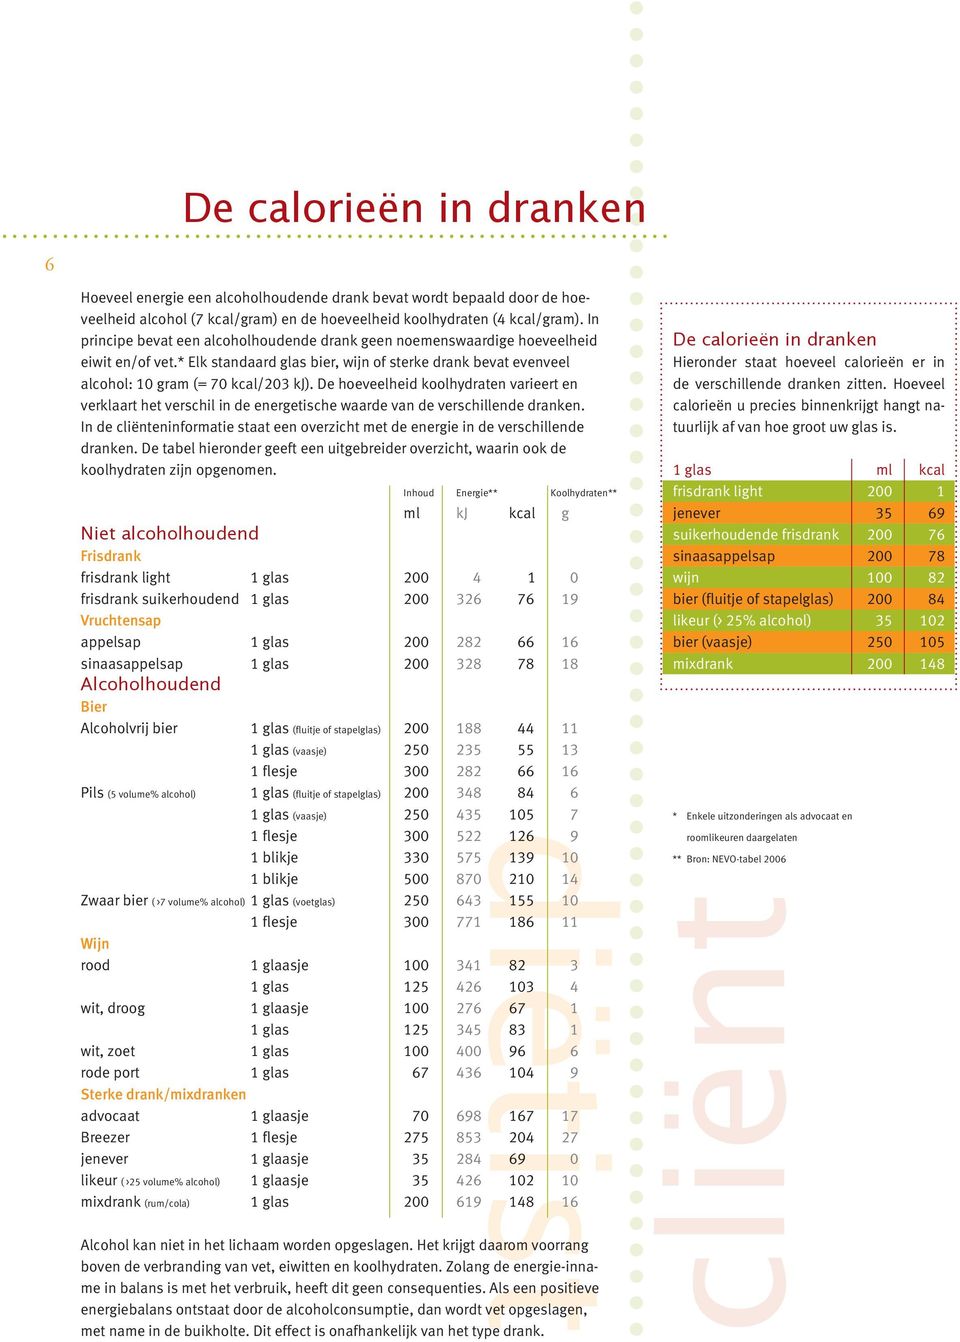 De hoeveelheid koolhydraten varieert en verklaart het verschil in de energetische waarde van de verschillende dranken.